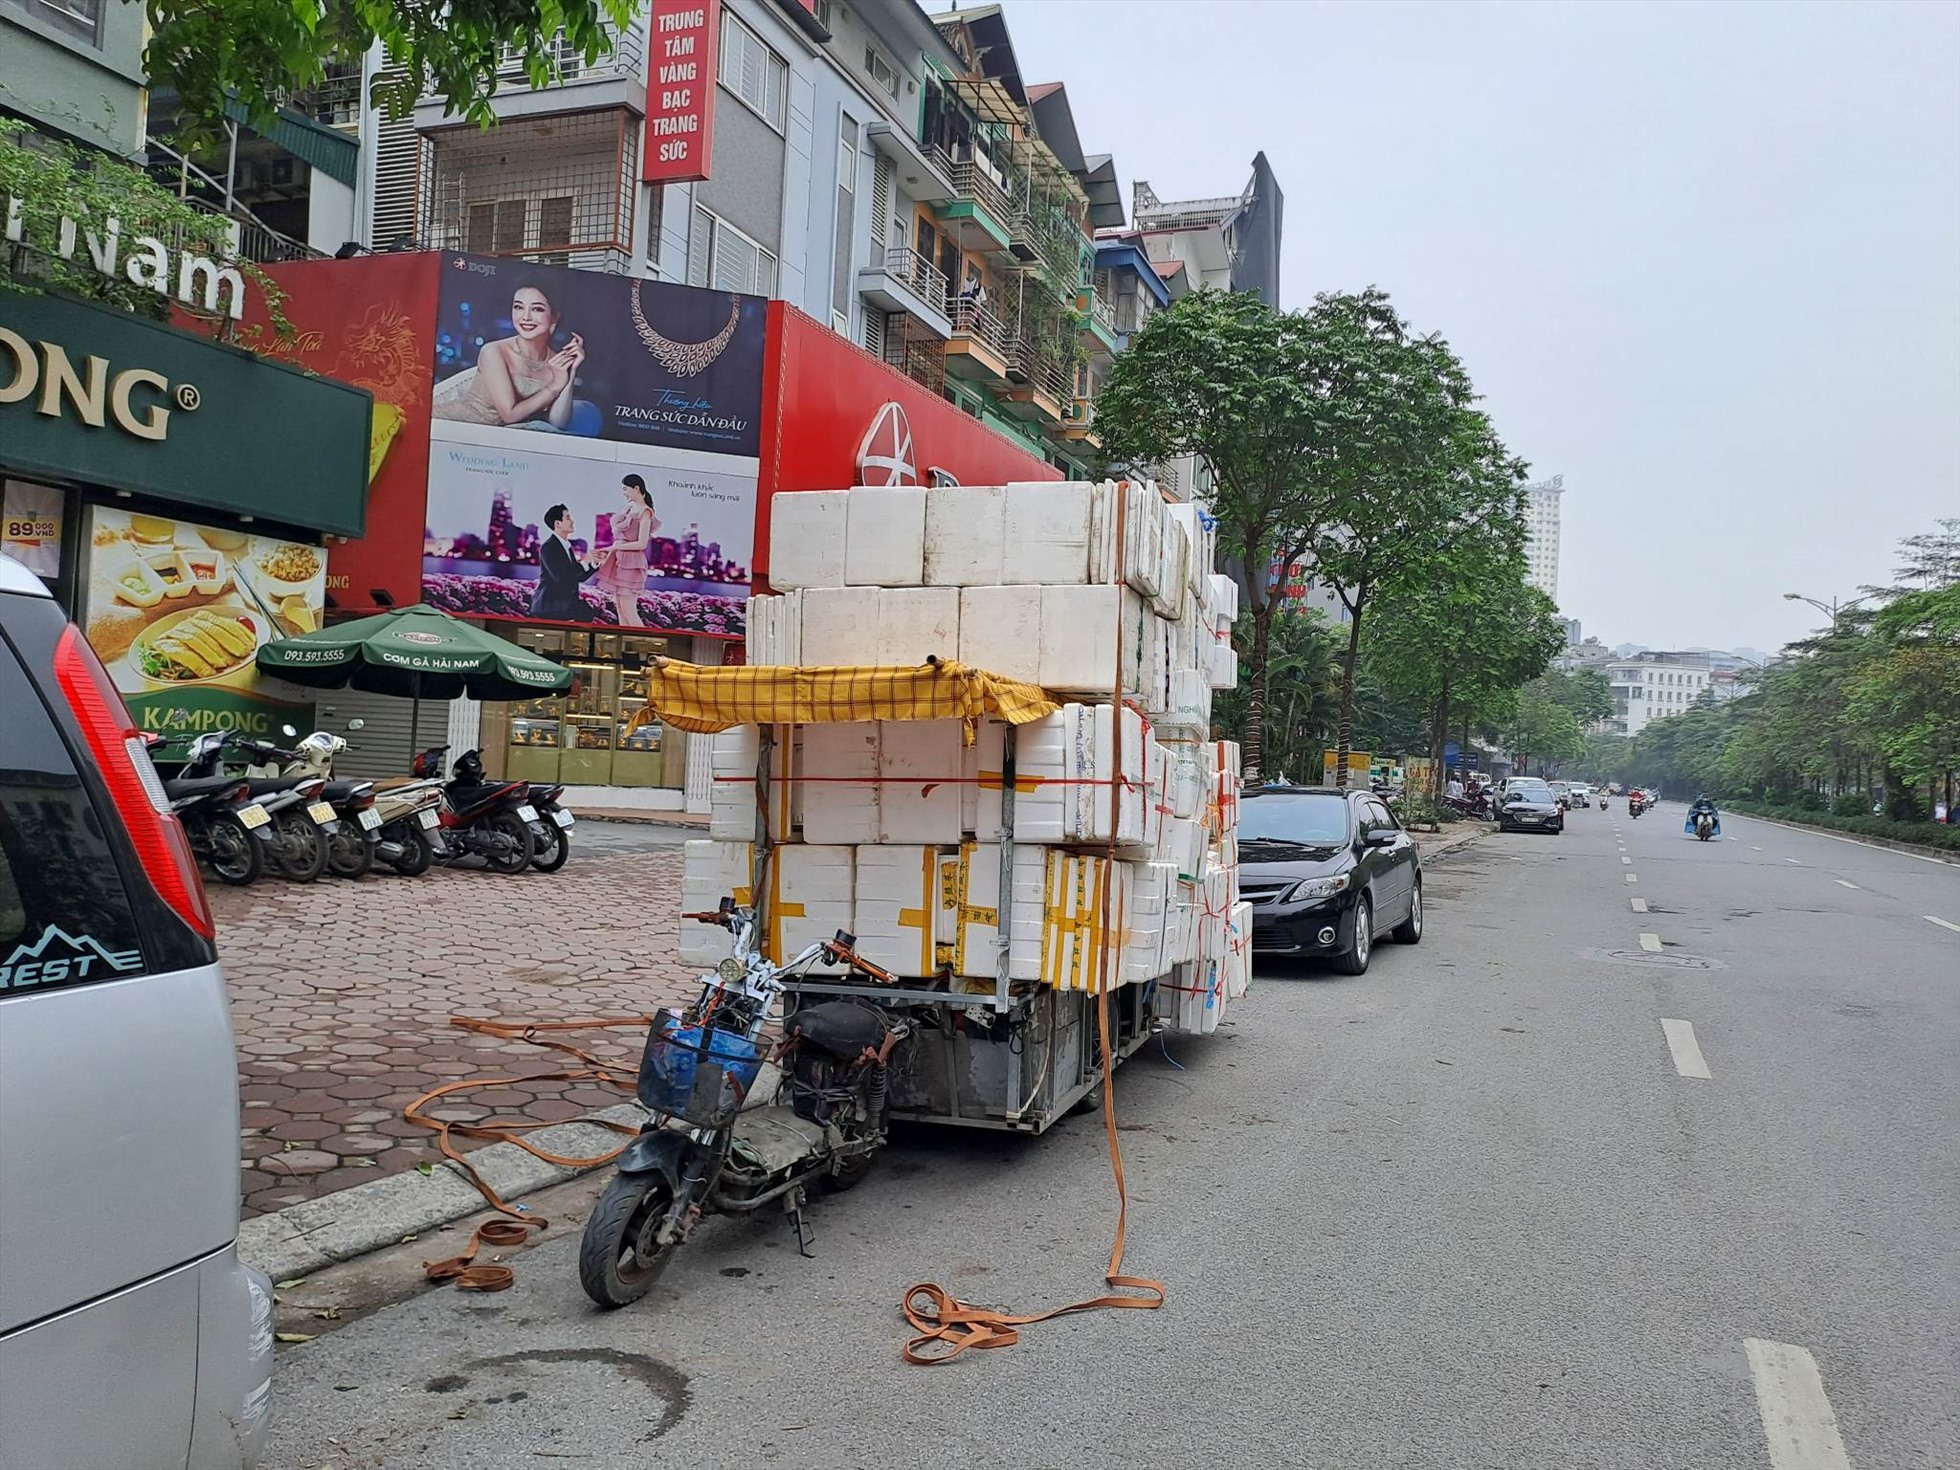 Xe máy chế kéo theo hàng hóa cồng kềnh phía sau. Ảnh: Chụp tại đường Nguyễn Hoàng, Hà Nội